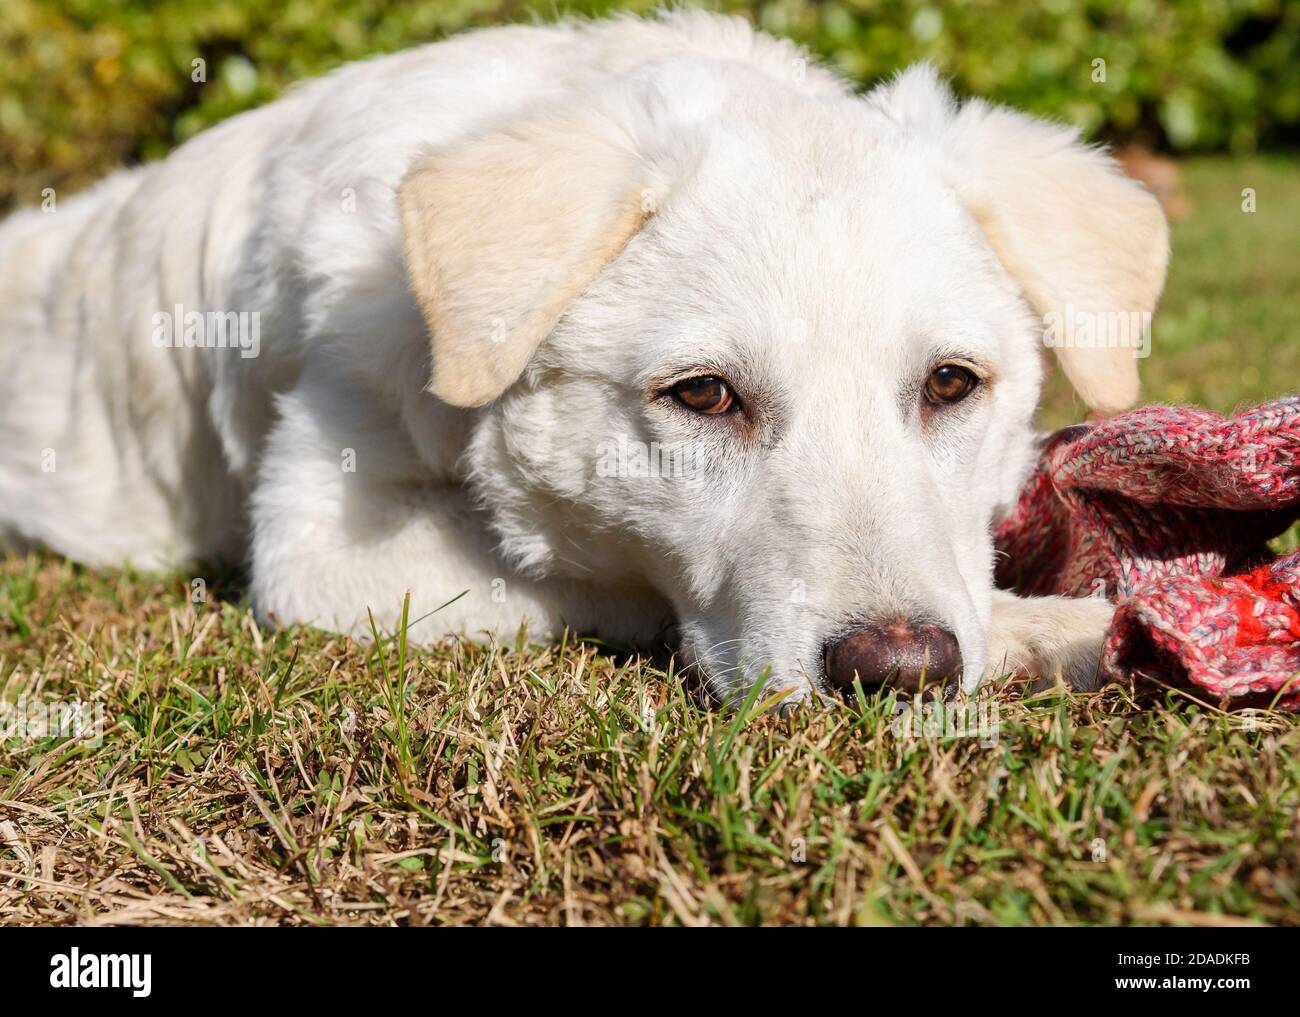 Un chien blanc mignon, semblable au Labrador, mâche la chaussette de laine dans le jardin. Banque D'Images